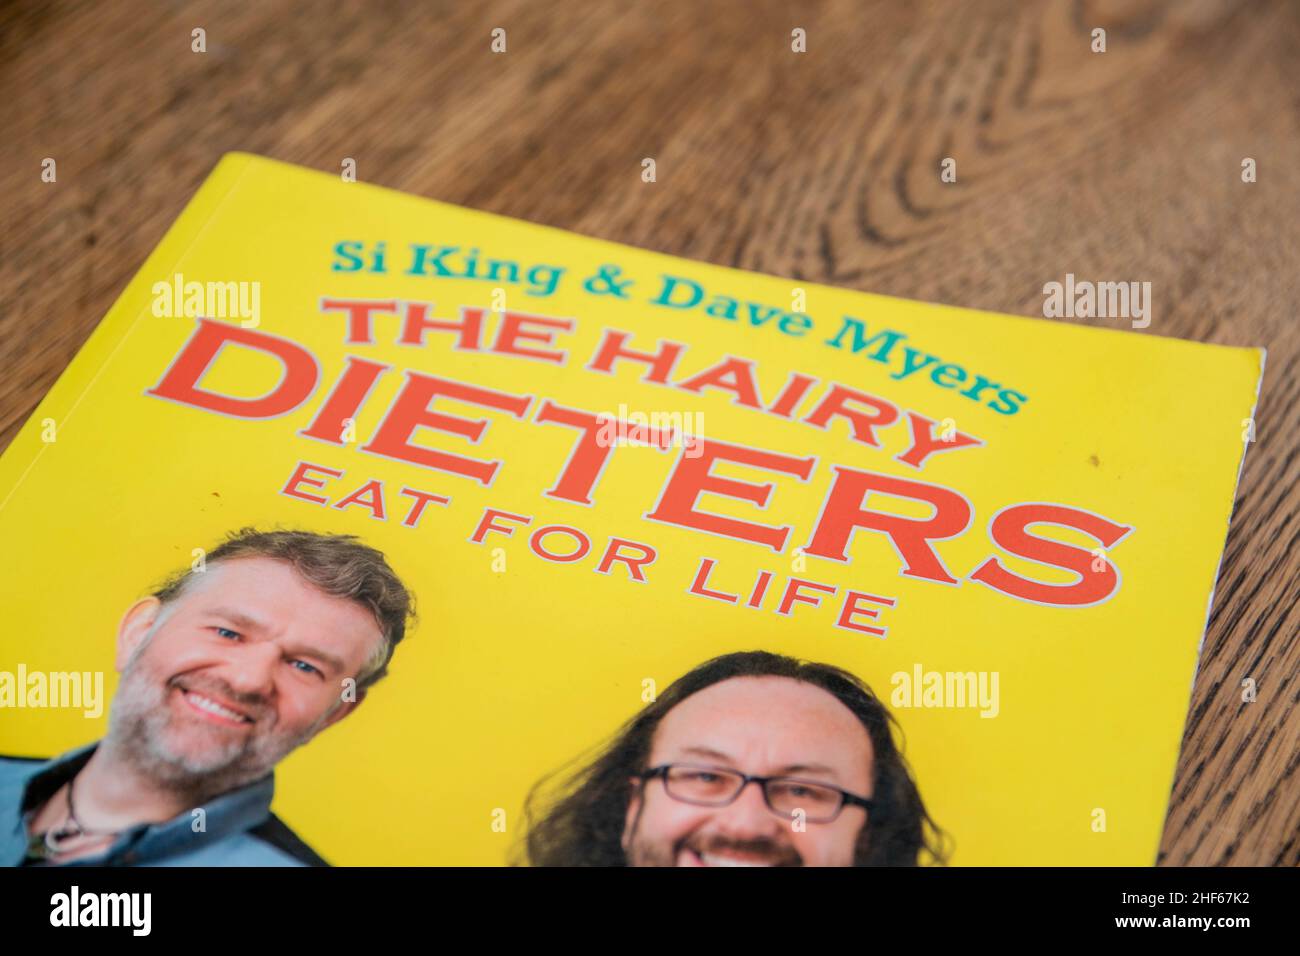 Durham, UK - 20 Nov 2020: SI King und David Myers Hairy Dieters Promi-Kochbuch von den Hairy Bikers. Promi-Köche lehren, wie man echtes Essen aber s kochen Stockfoto